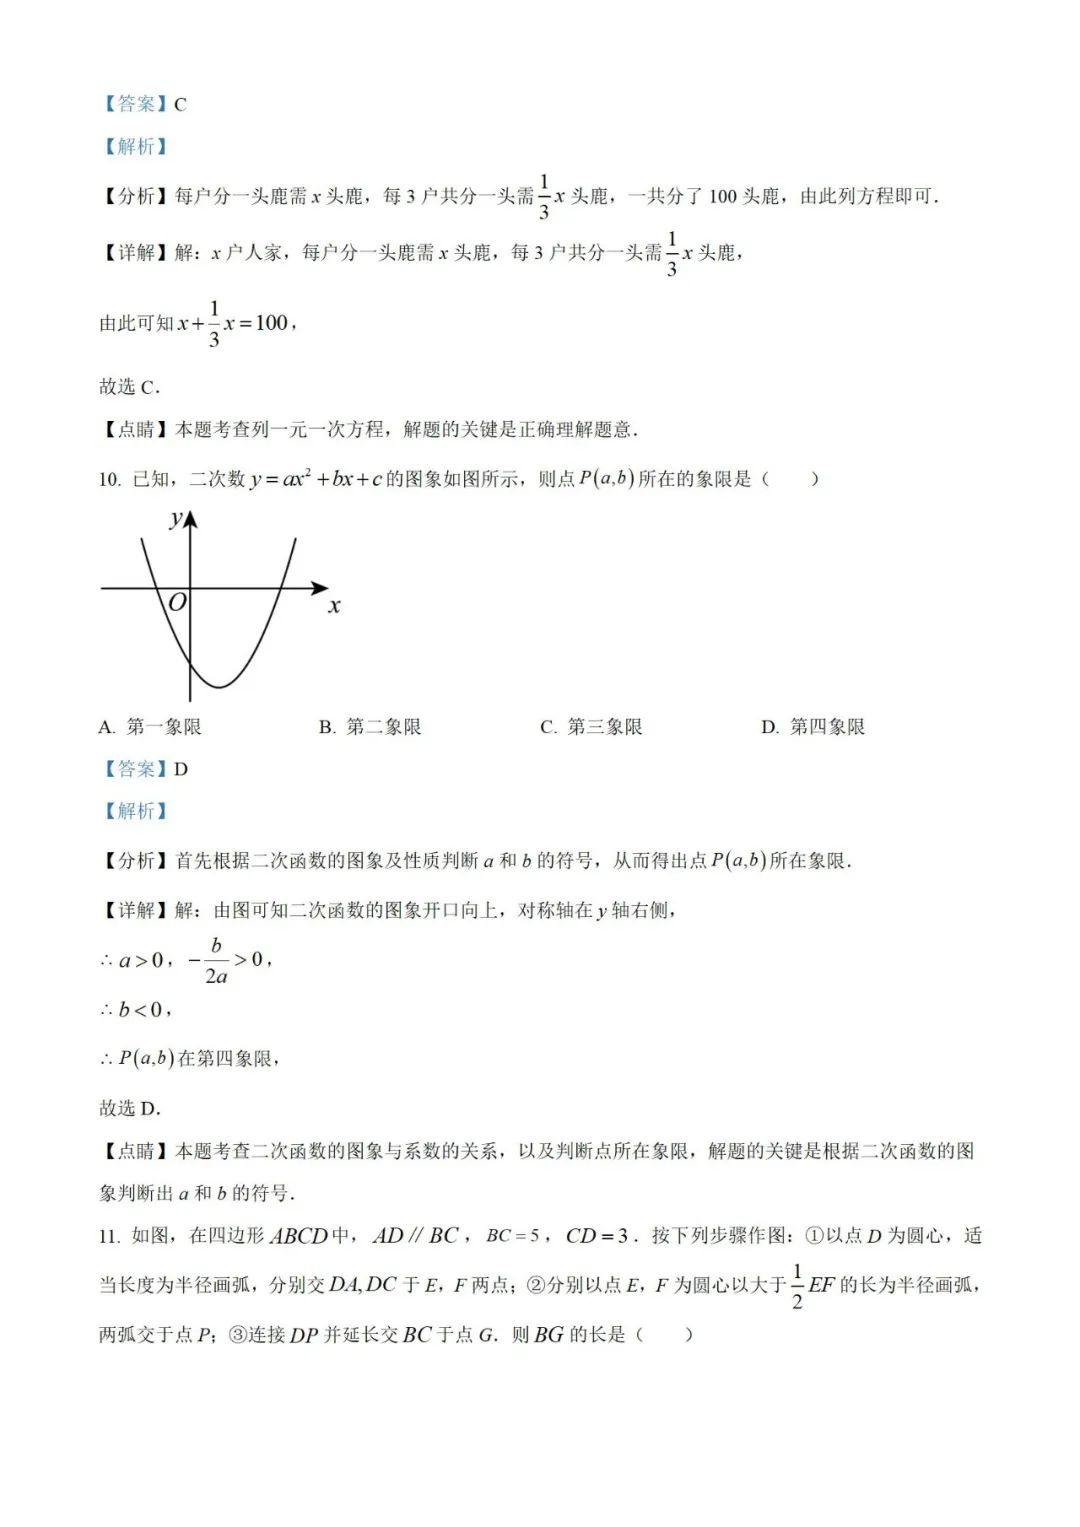 【中考真题】2023年贵州省中考数学真题 (带答案解析) 第13张